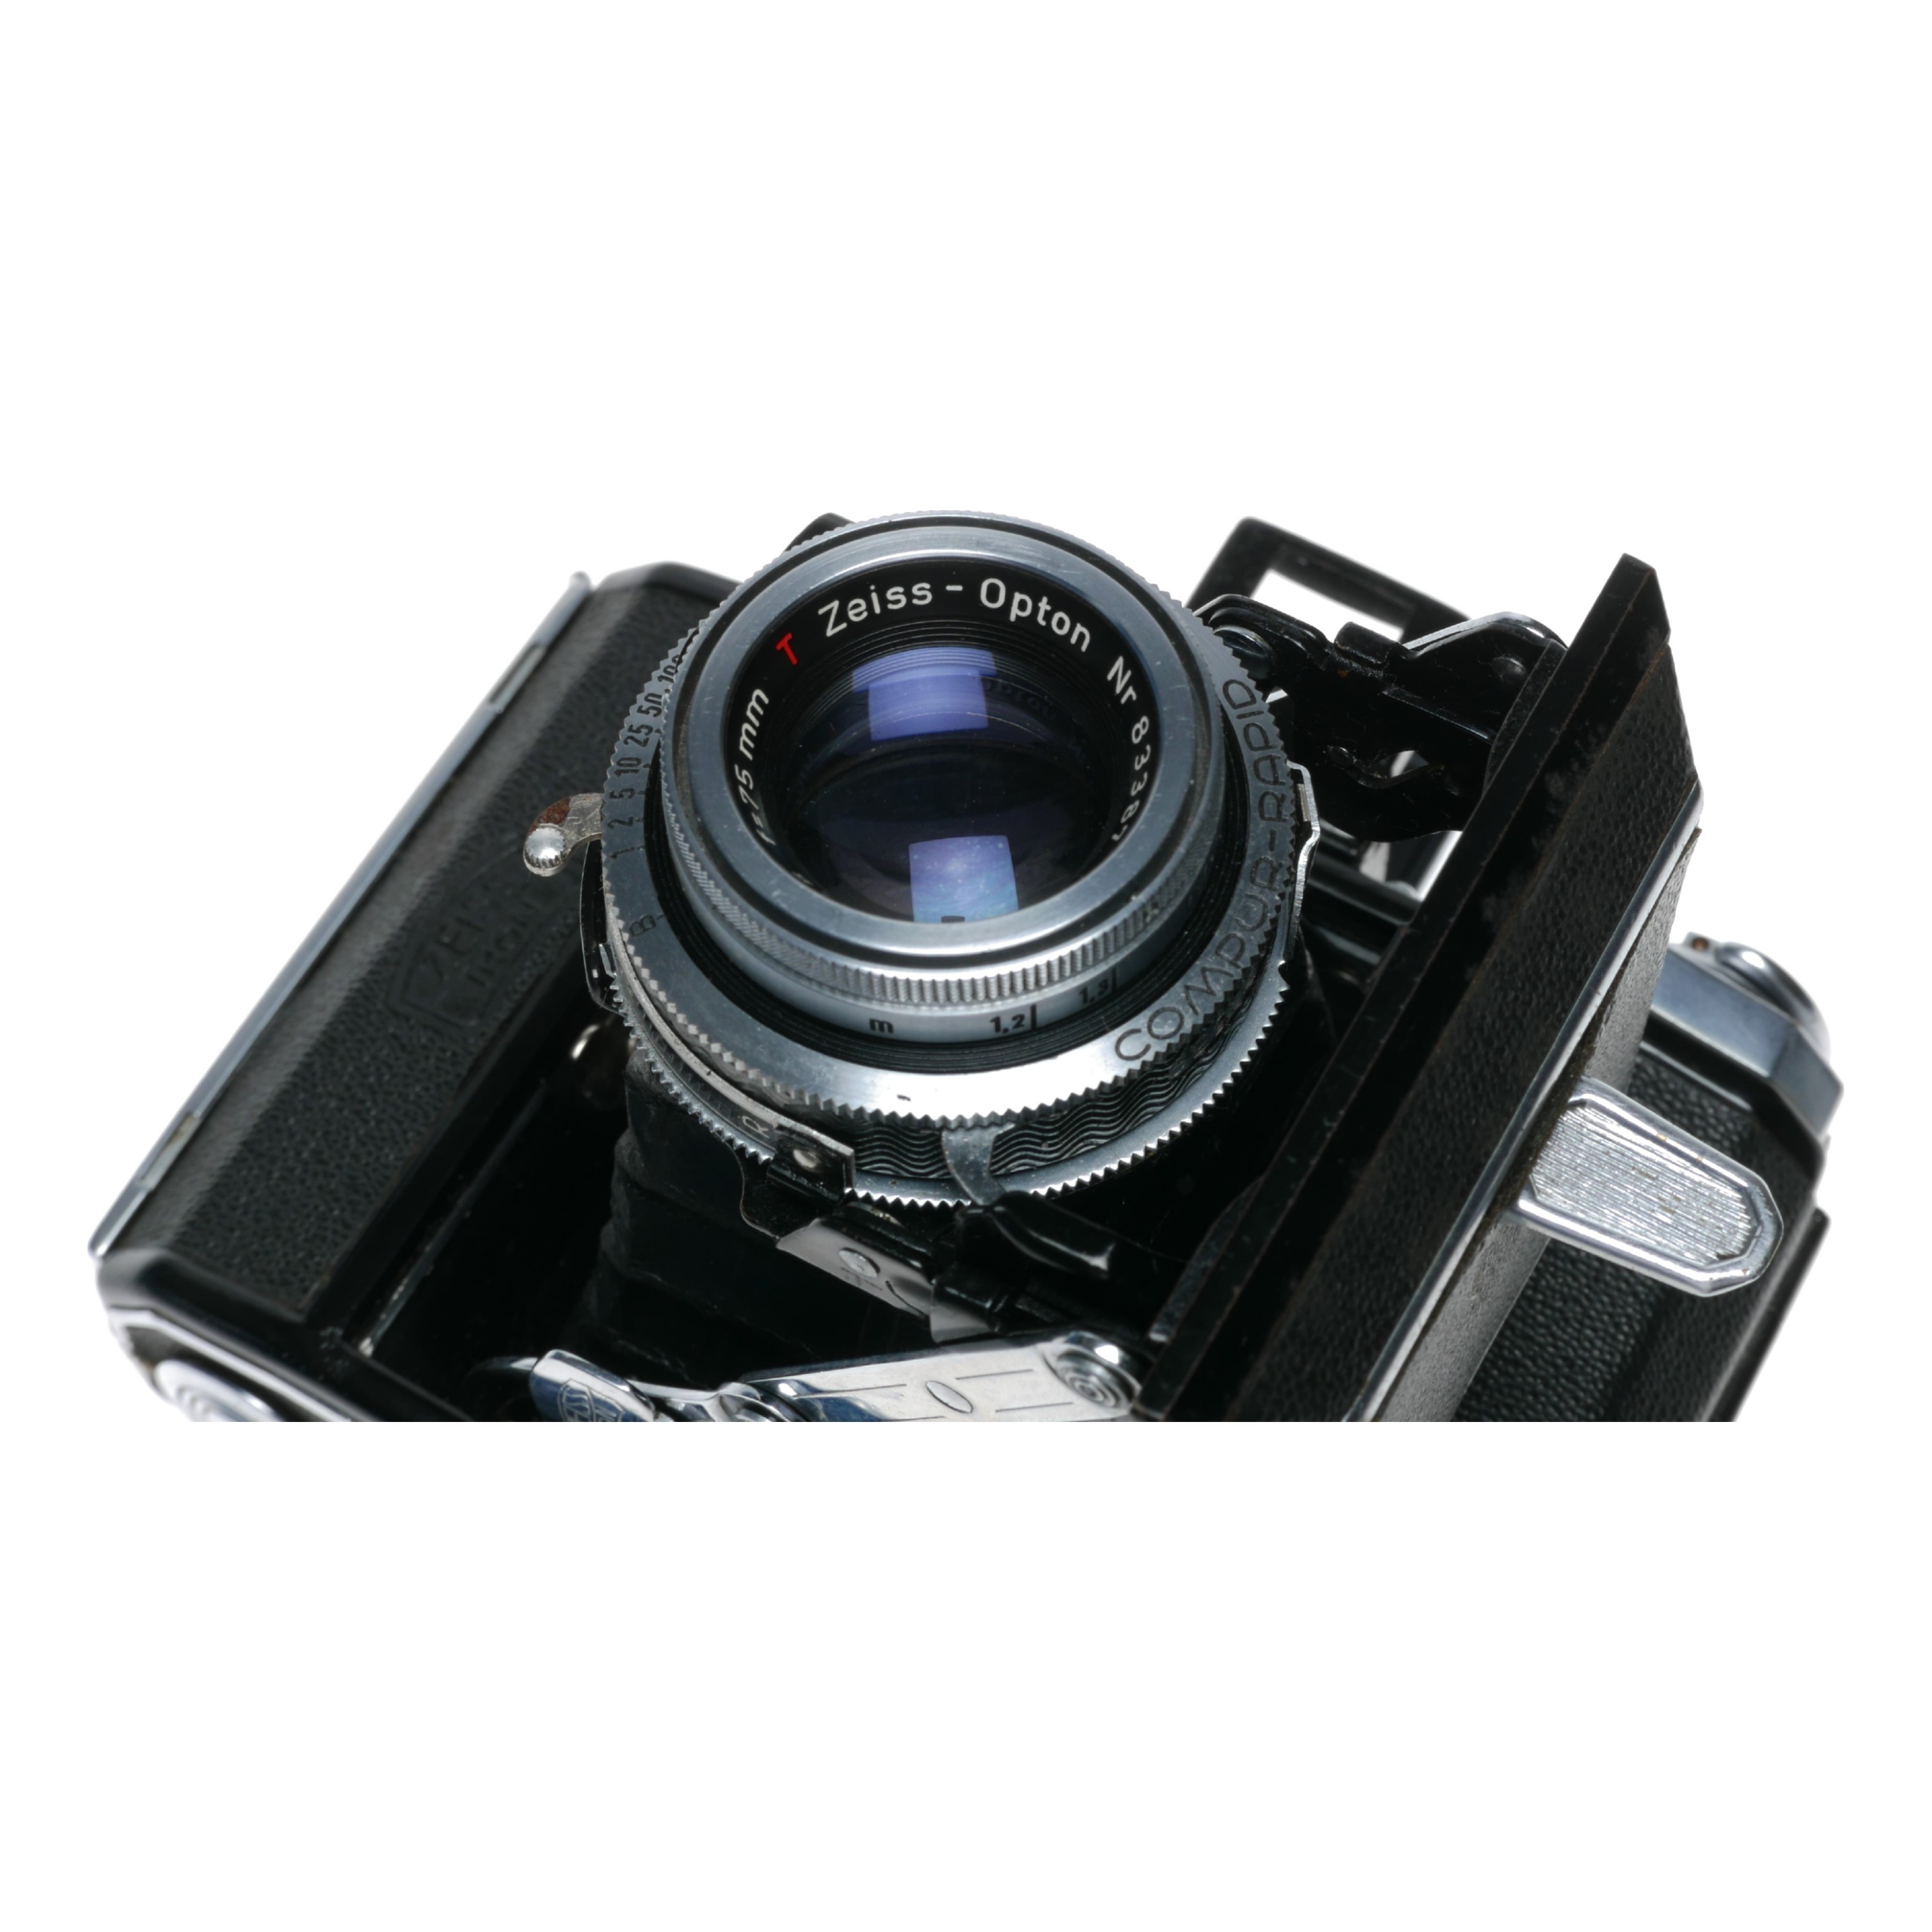 Zeiss Ikon Ikonta A 521 Vertical Folding Camera Opton Tessar 1:3.5